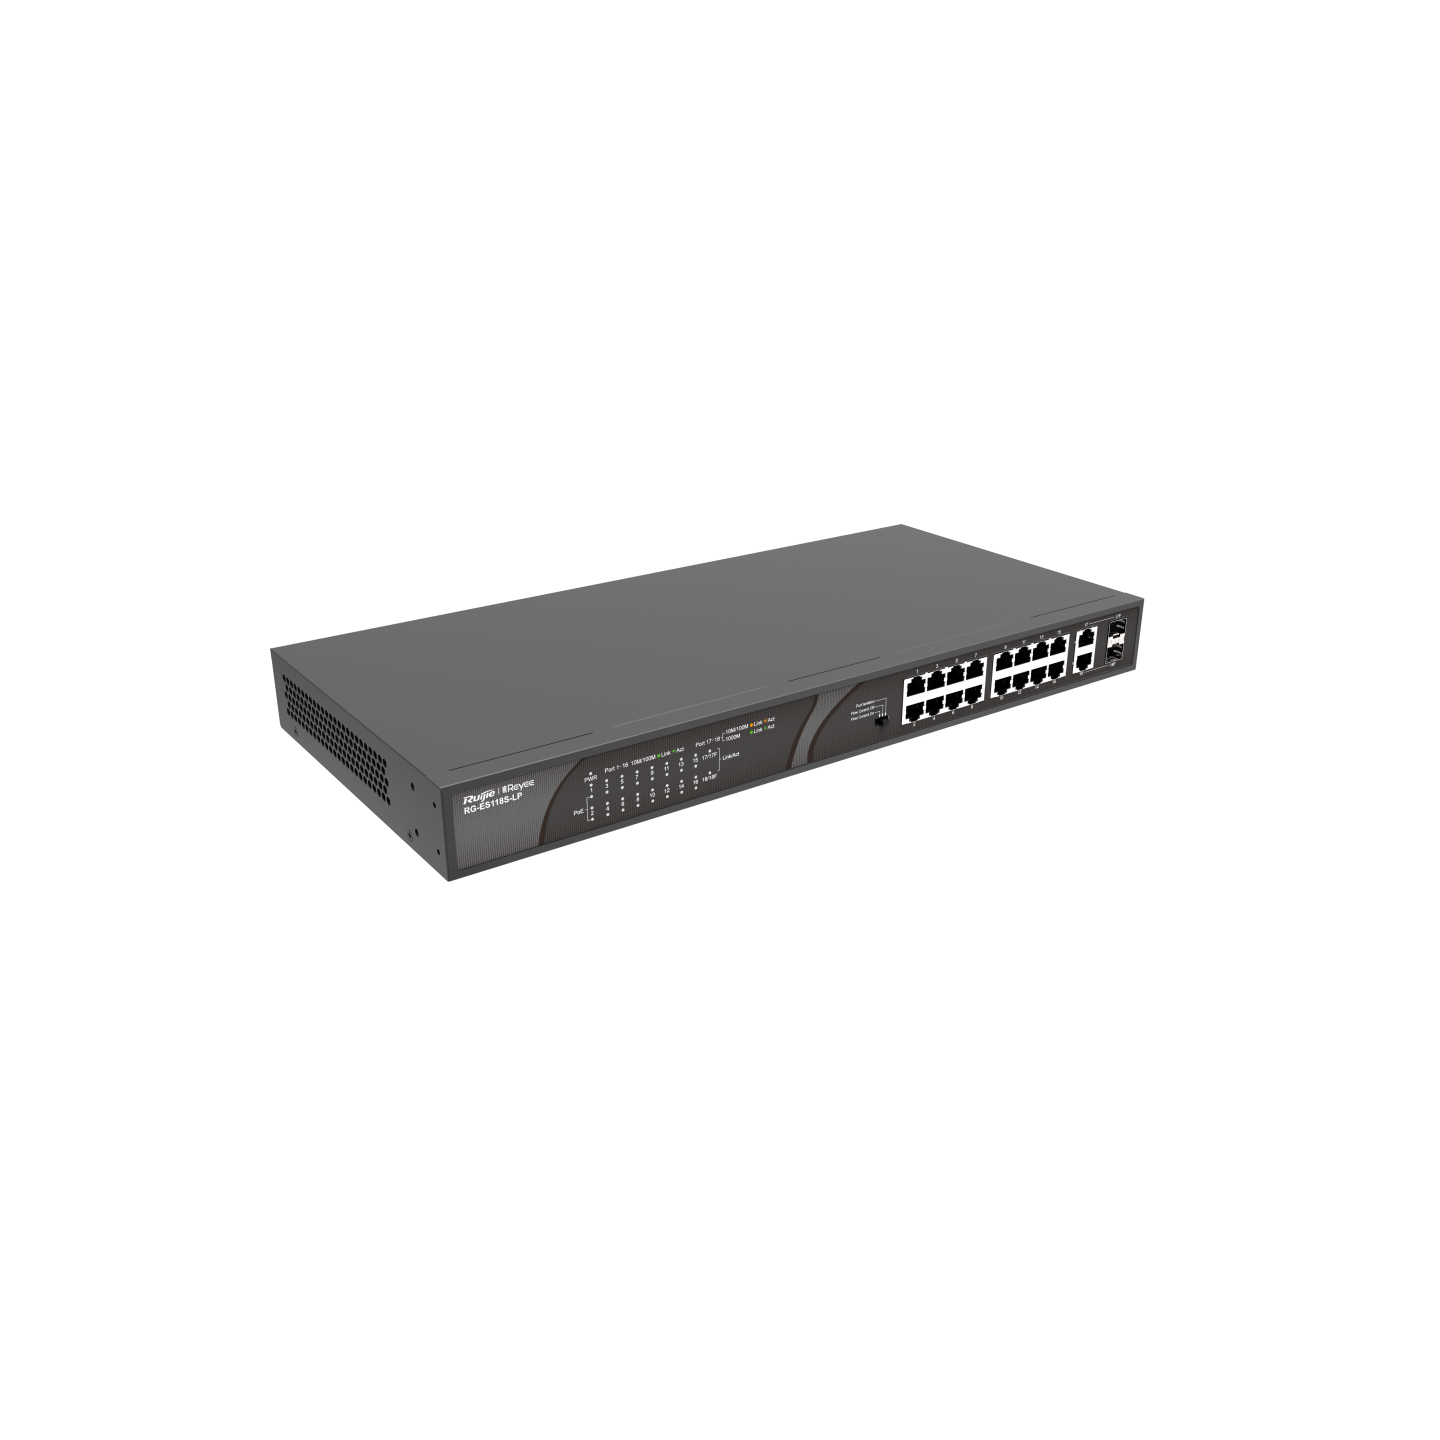 锐捷RG-ES118S-LP，16端口10/100Mbps桌面非网管交换机